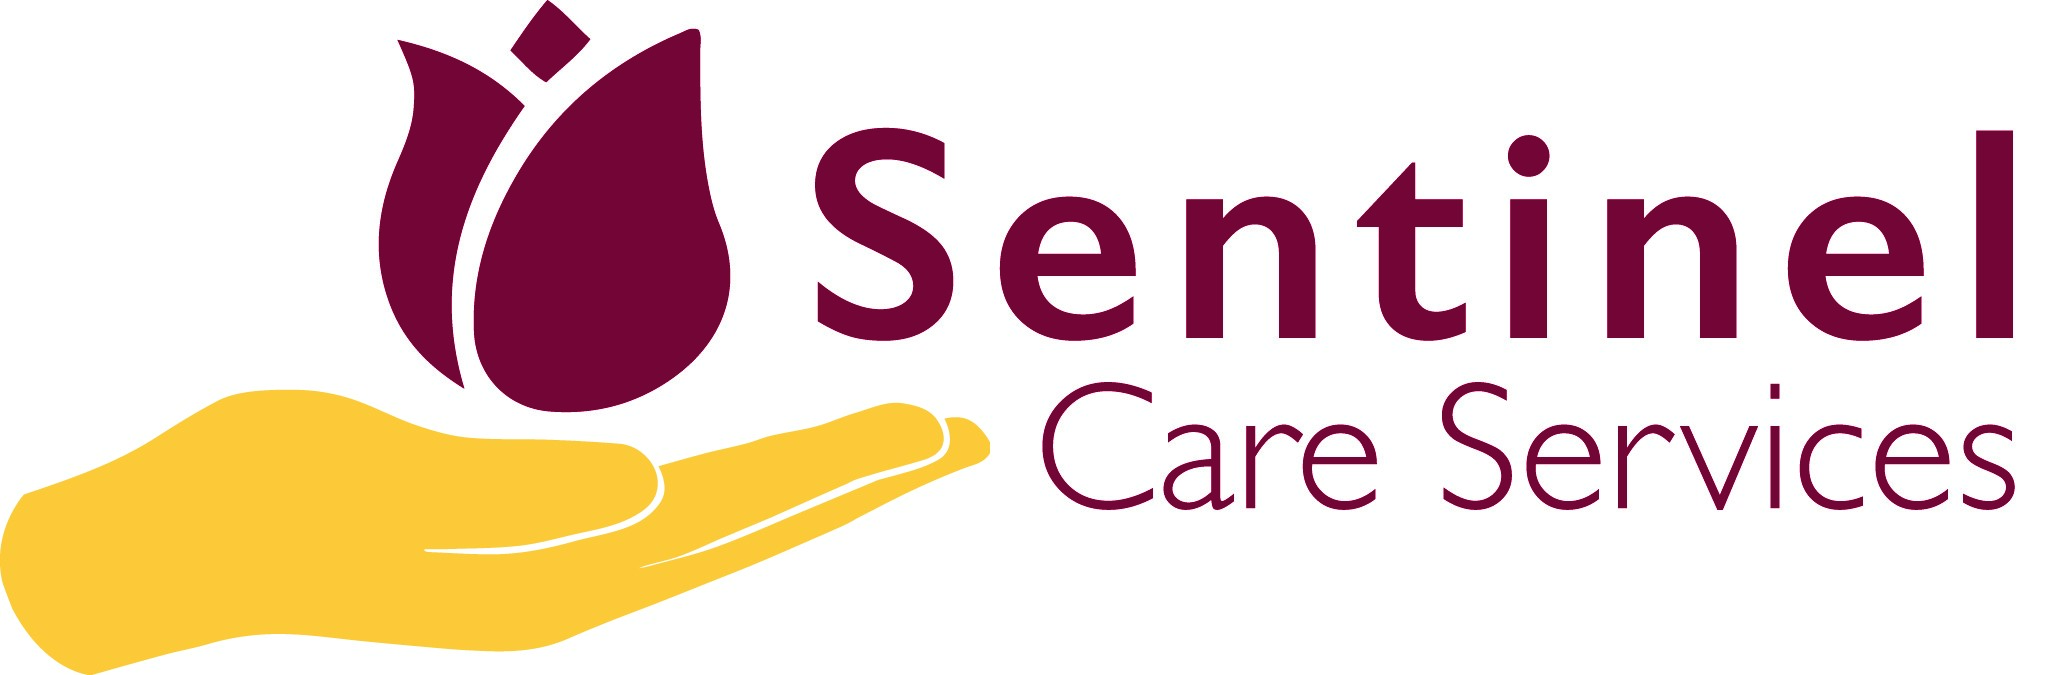 Company Sentinel Logo - Sentinel Care Services Logo - Sentinel Care Services